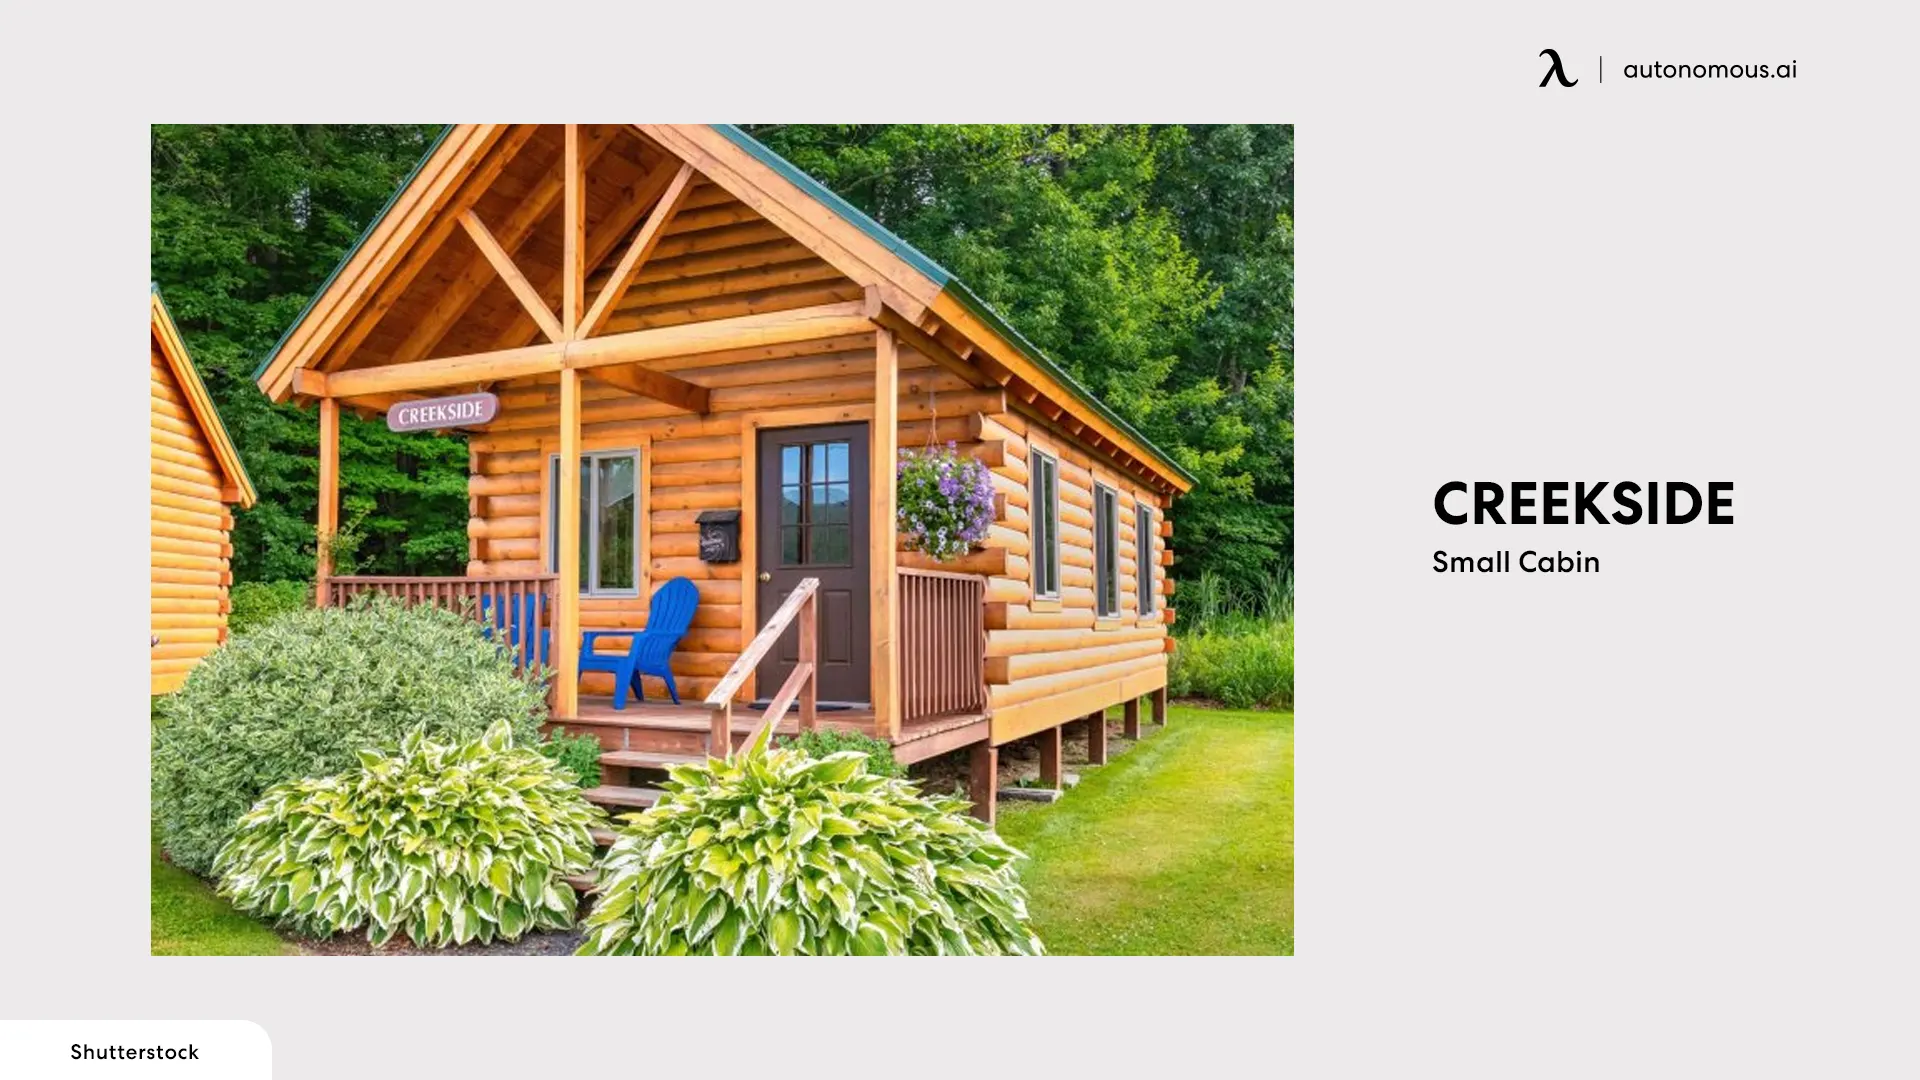 Creekside Small Cabin